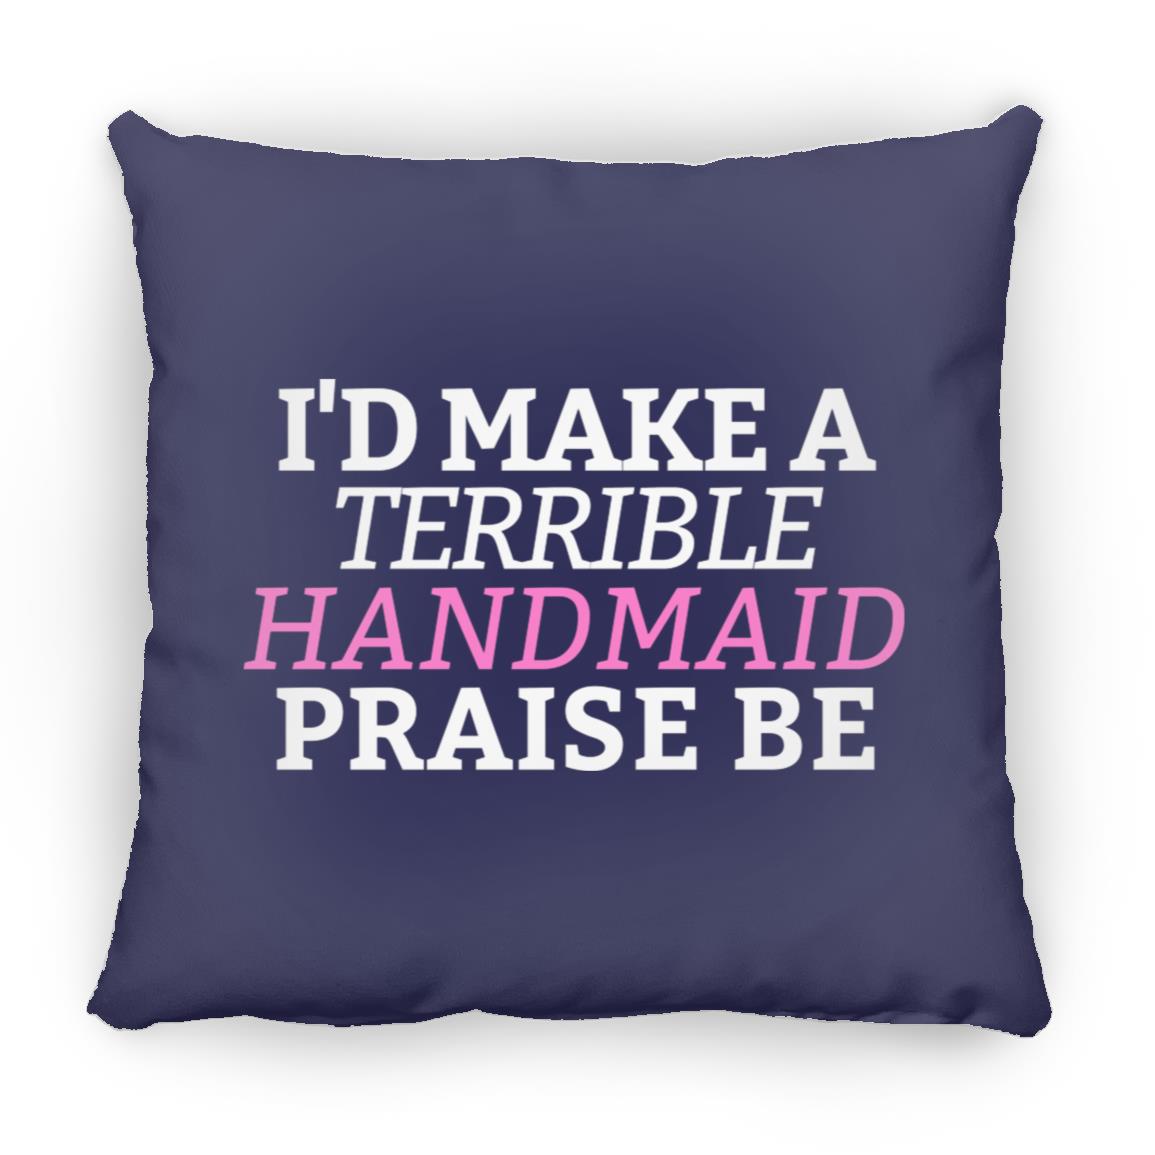 I'd Make A Terrible Handmaid. Praise Be. Throw Pillow